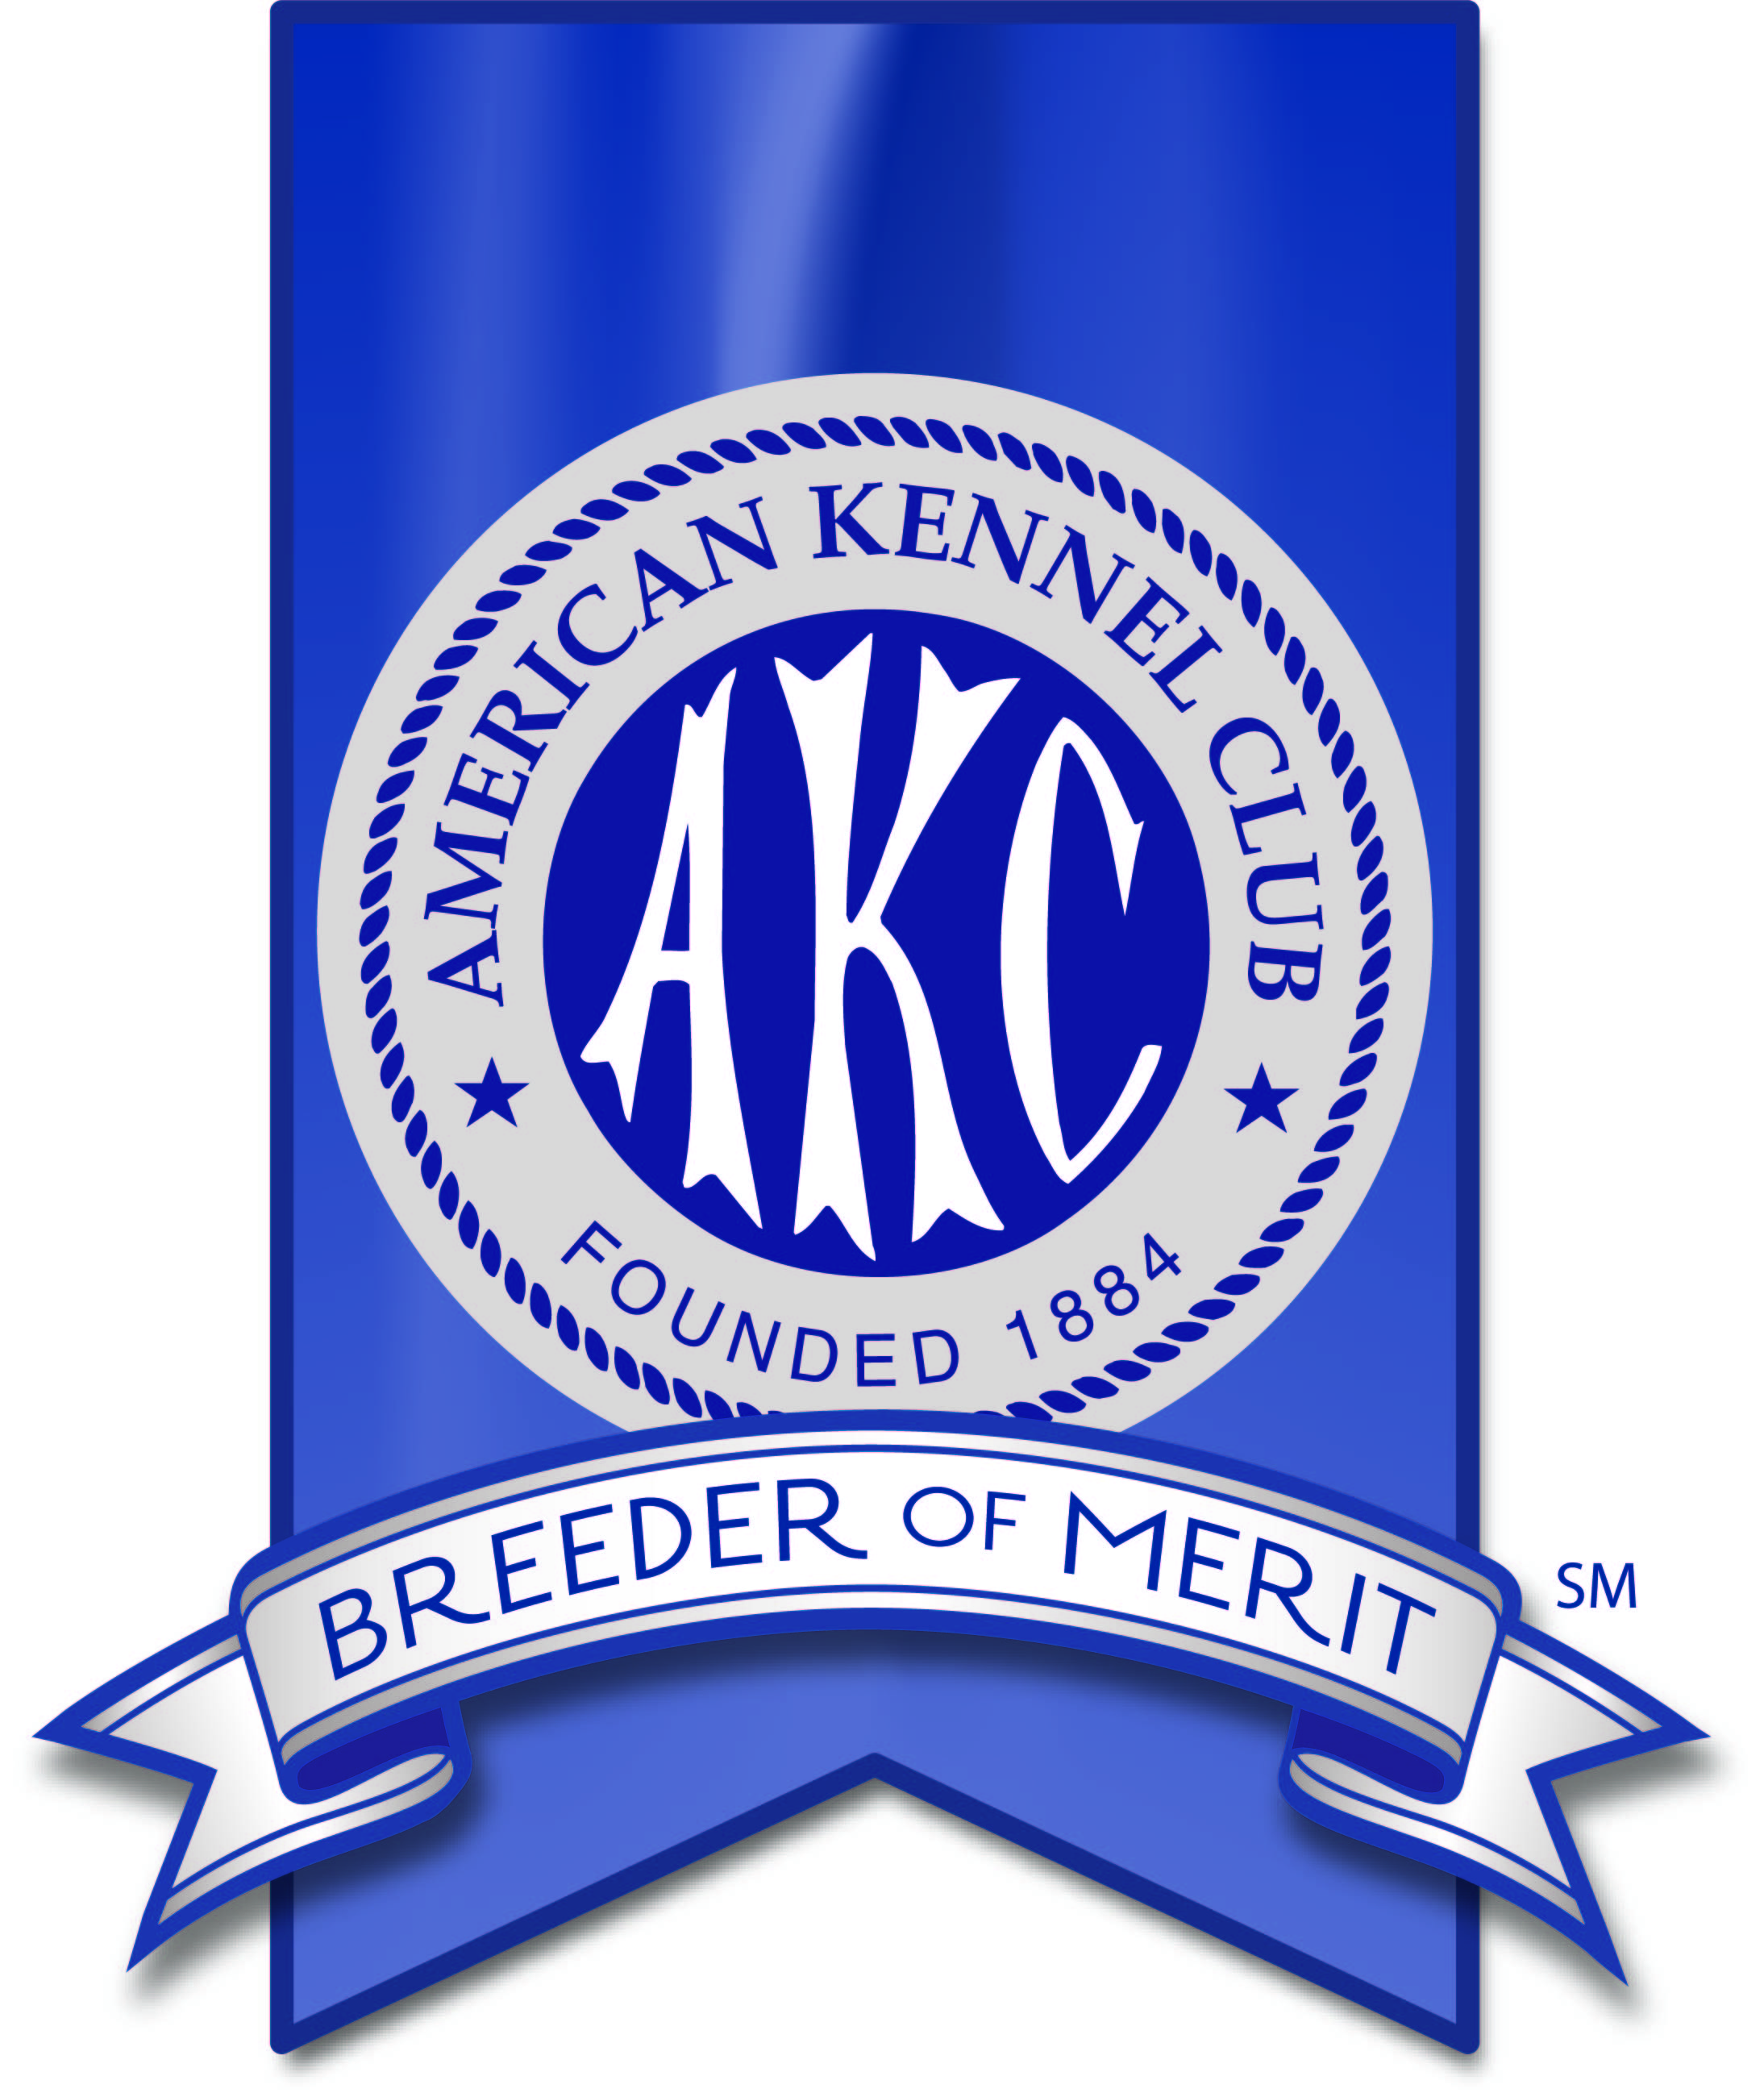 AKC Breeder of Merit Program banner logo